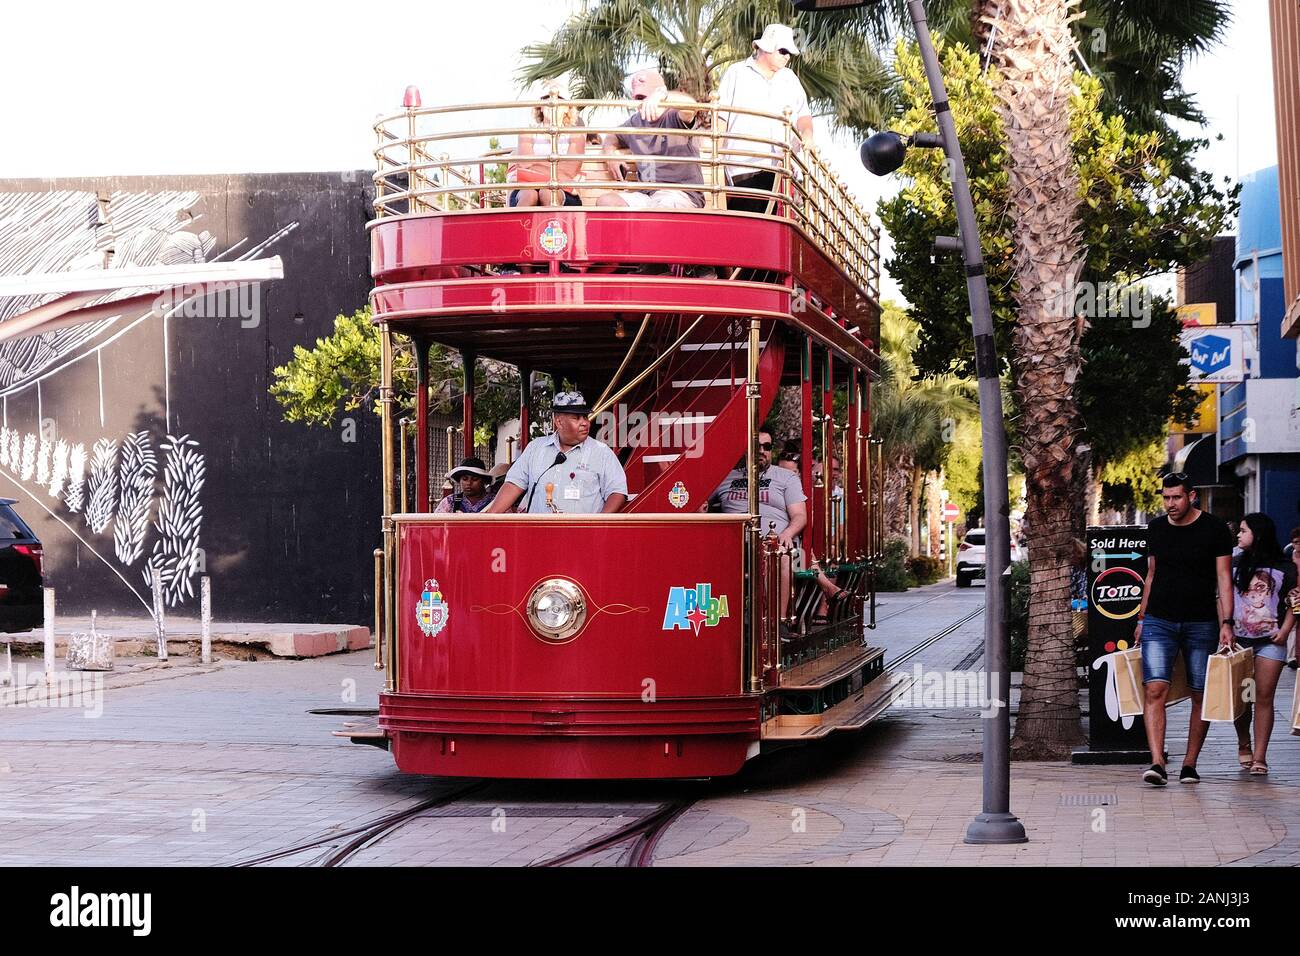 Un tramway ou un tramway peint aux couleurs vives fait son chemin le long d'une rue à Oranjestad sur l'île néerlandaise des Caraïbes d'Aruba. Ils sont exploités par Arubus Banque D'Images